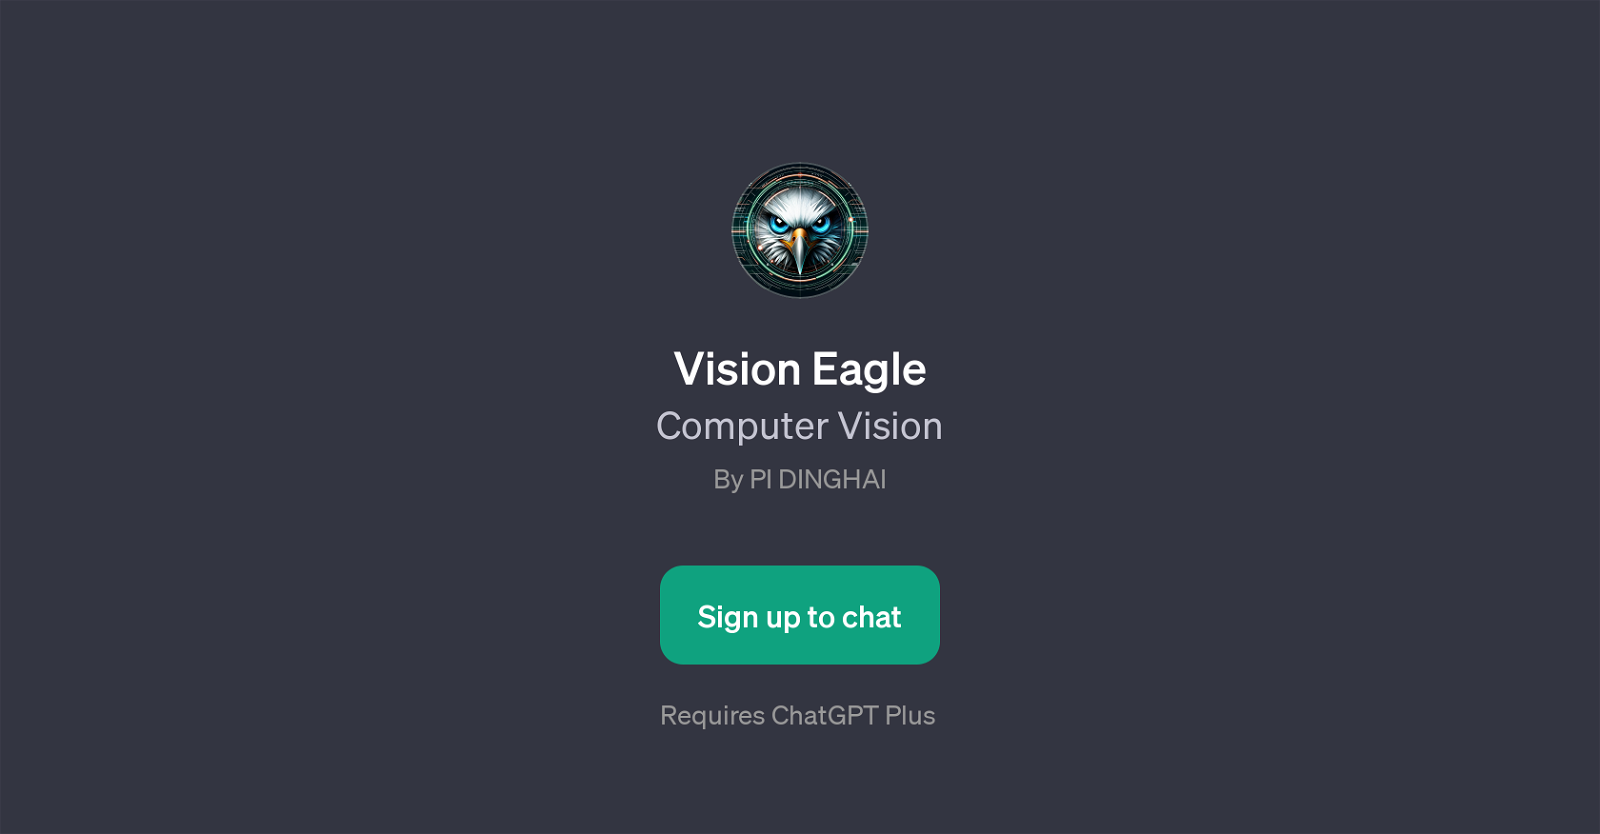 Vision Eagle website